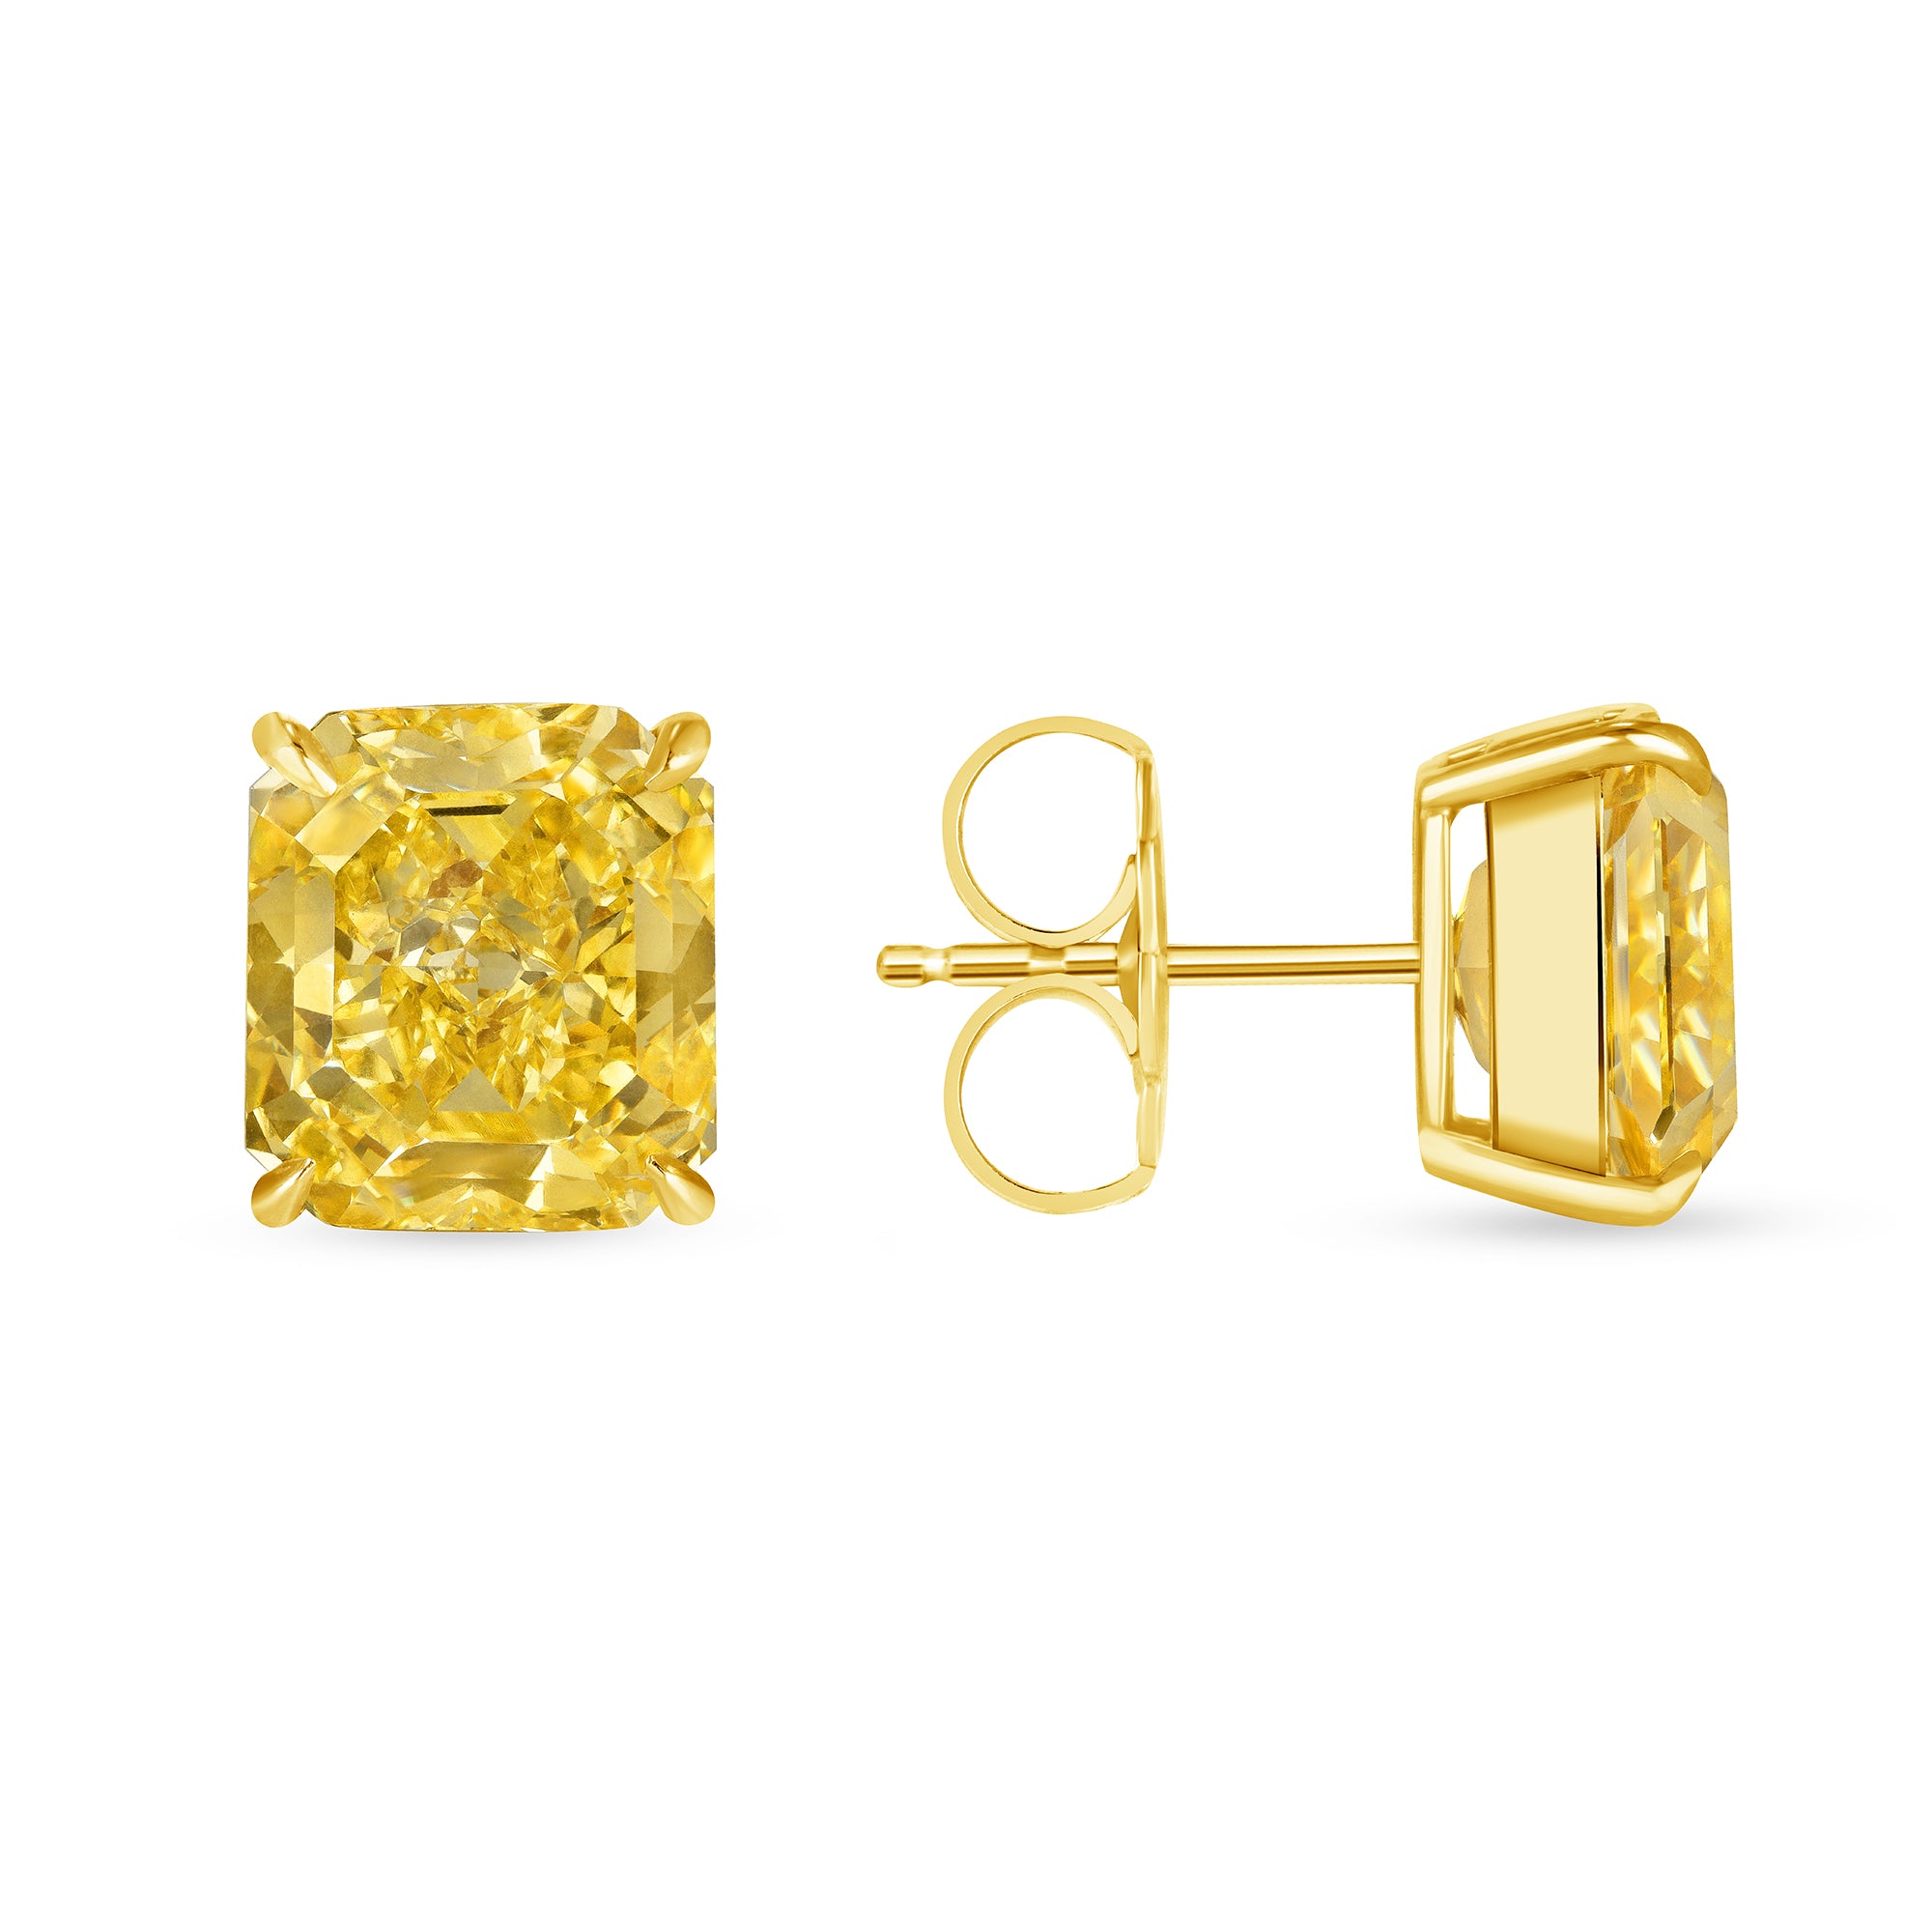 Radiant Cut Fancy Intense Yellow Diamond Stud Earrings in 18 Karat Yellow Gold